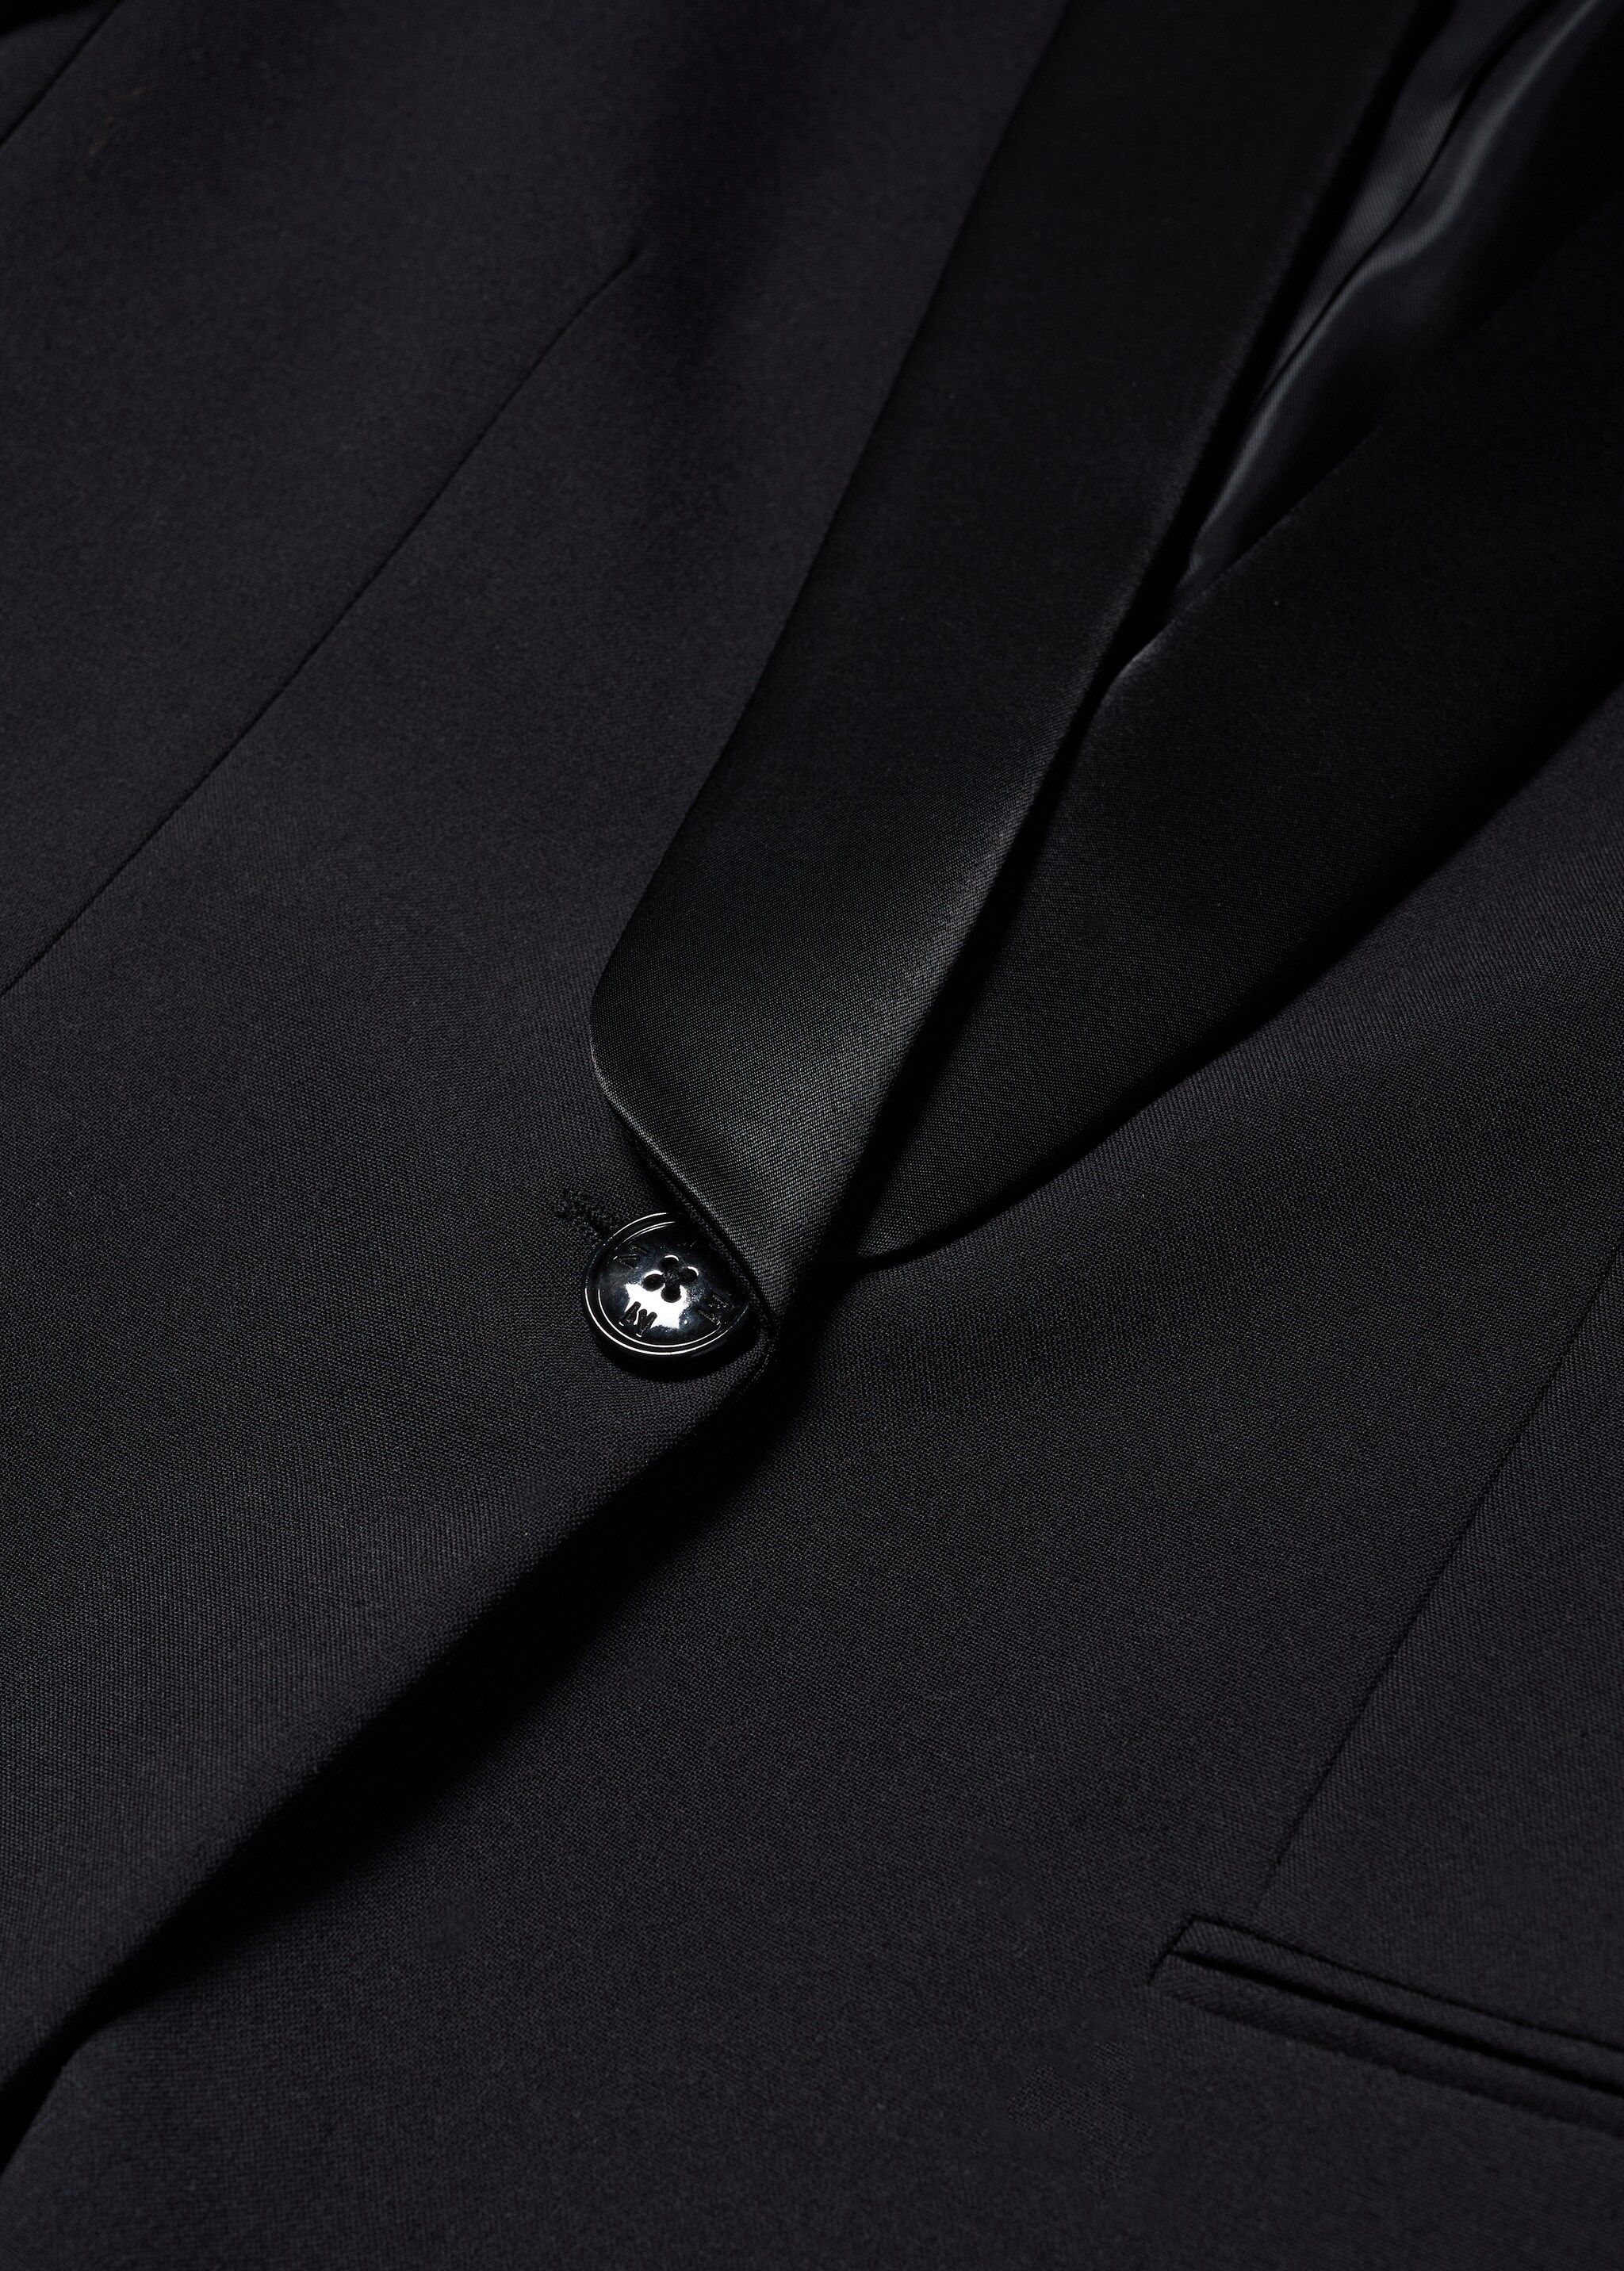 Satin lapels suit blazer - Details of the article 8